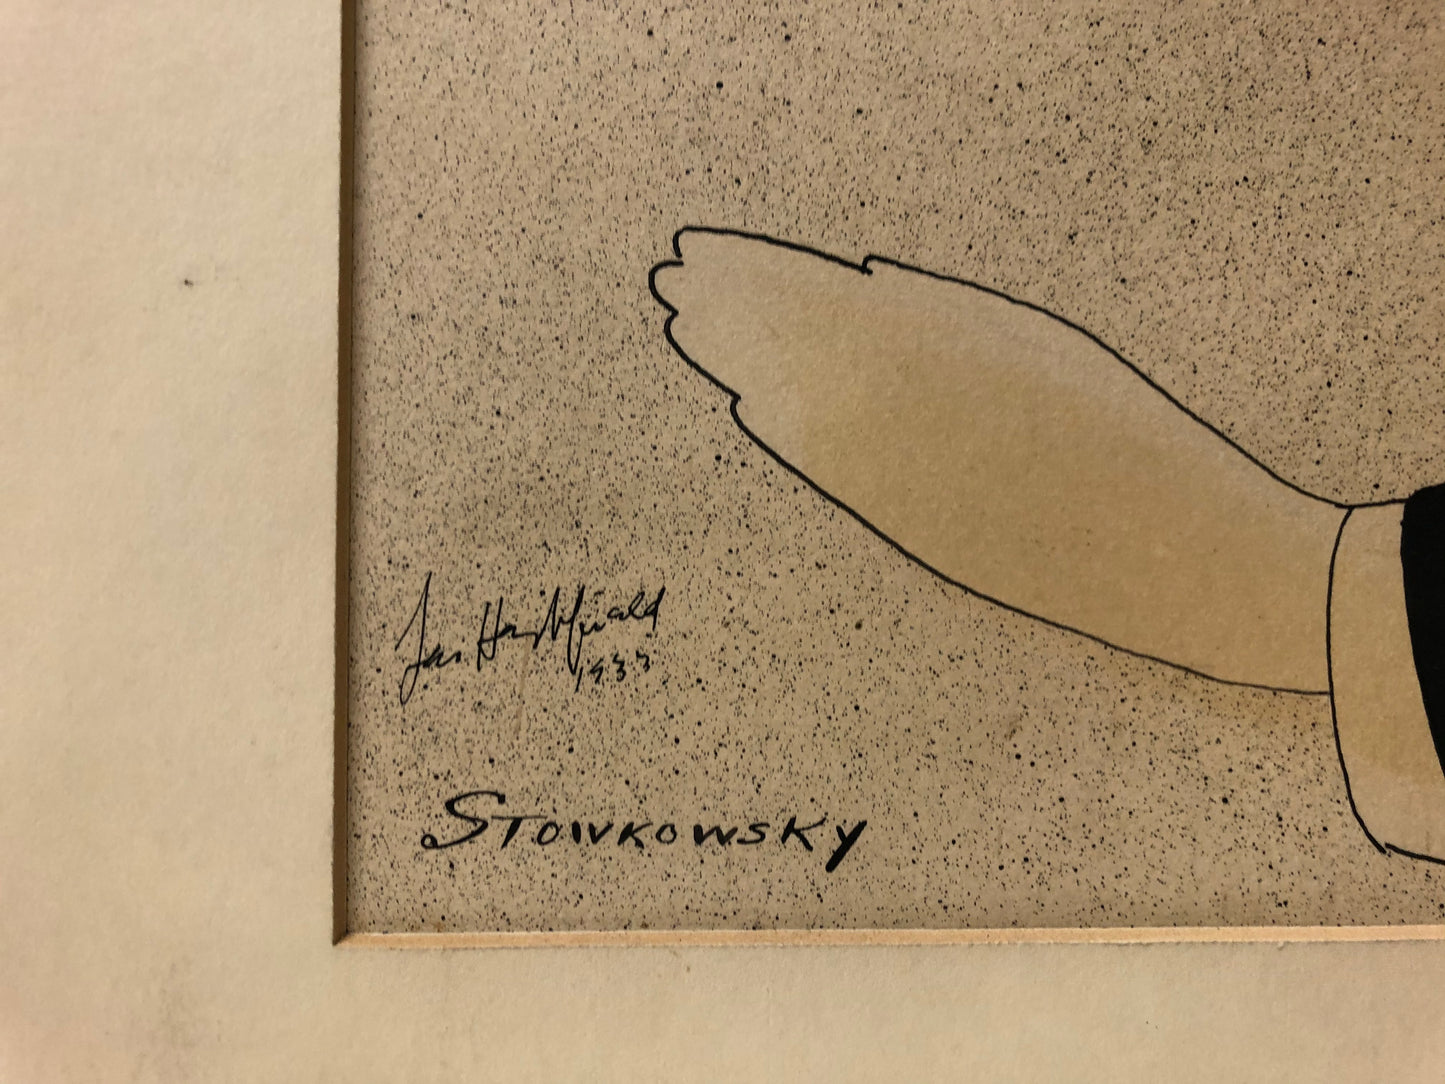 Set of 3 Leo Hershfield Drawings: "Serge Jaroff", "Stowkowsky", and "Chaliapin"